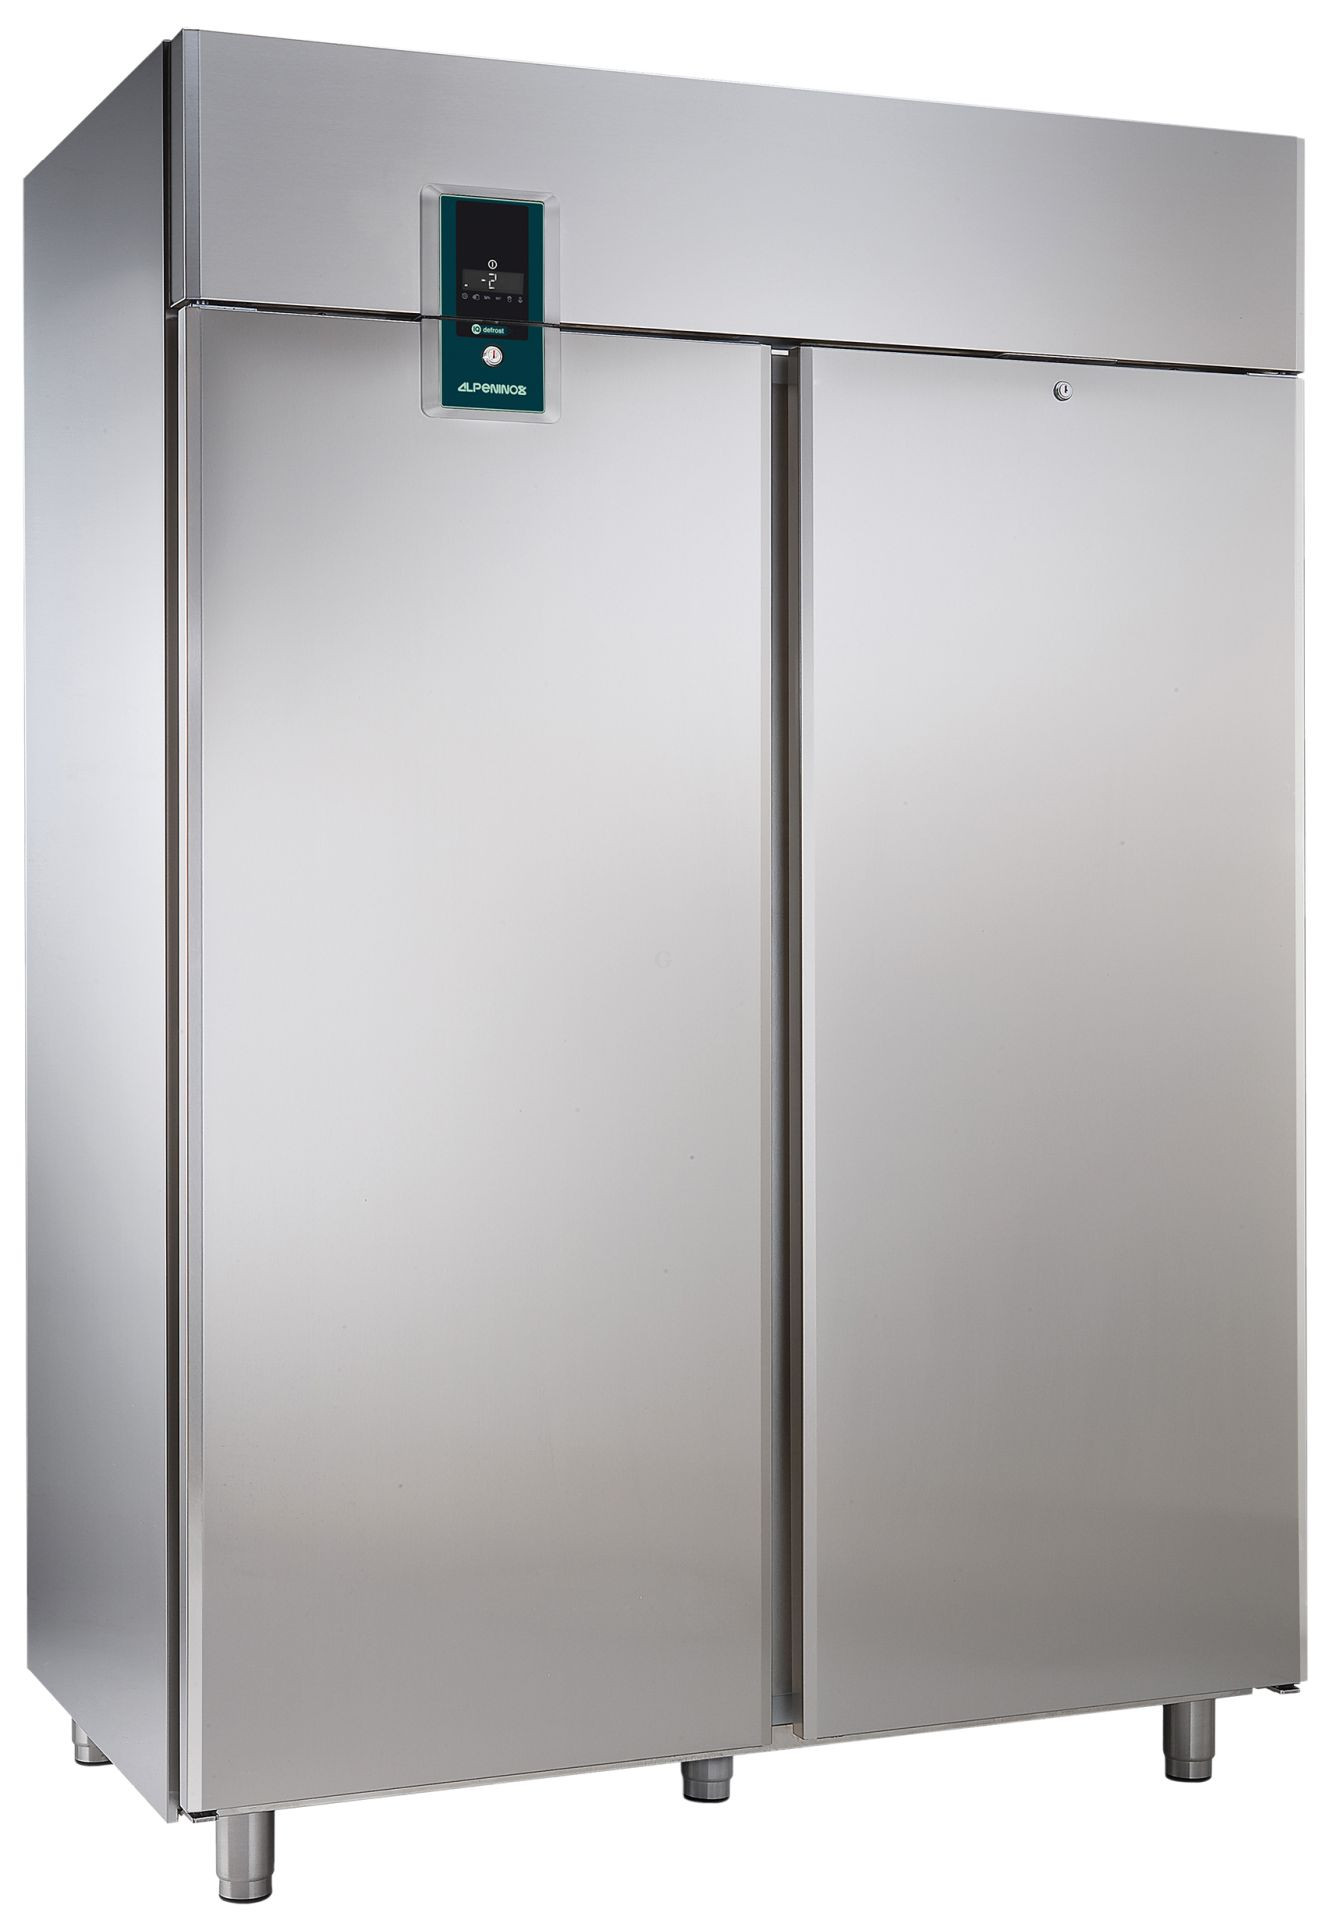 Шкаф холодильный 1 дверь. Шкаф холодильный Electrolux rex71fr (727313). Шкаф холодильный среднетемпературный шсзрп-21,2. Шкаф холодильный э1ф 220в n-0,4 КВТ. Шкаф холодильный низкотемпературный гастронормированный gn2/1.